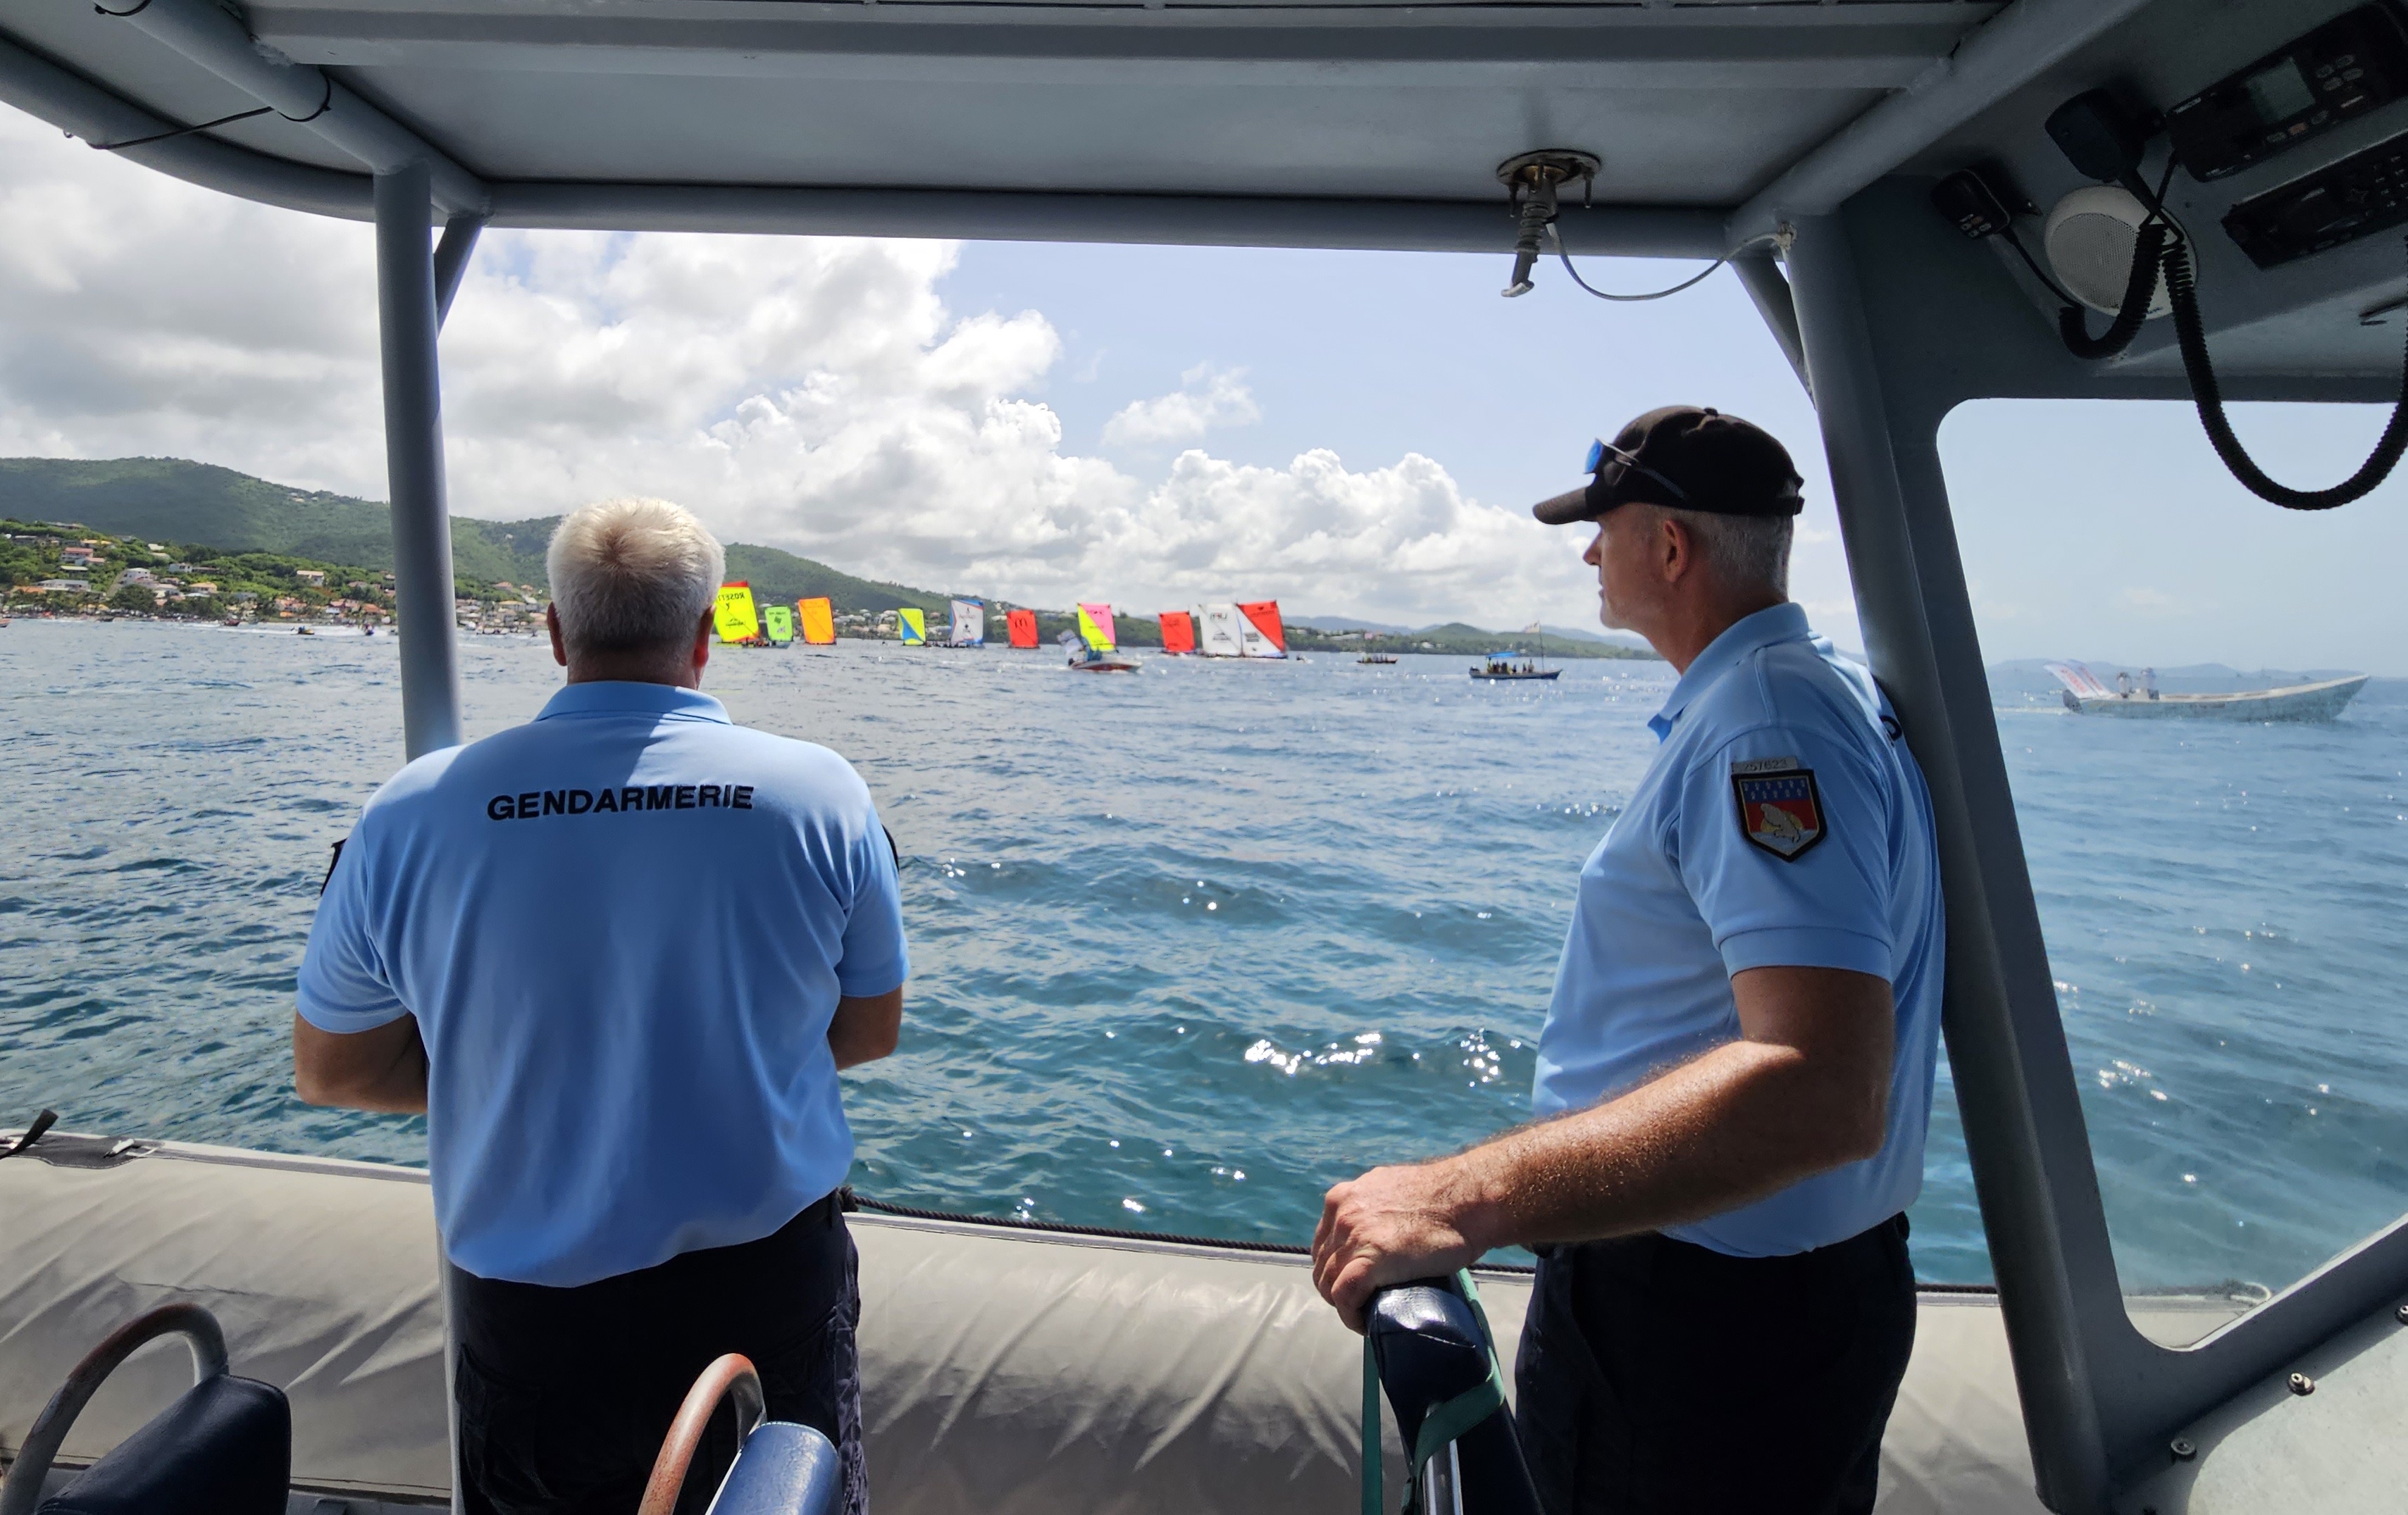     En mer aussi, la gendarmerie assure la sécurité du Tour des Yoles

